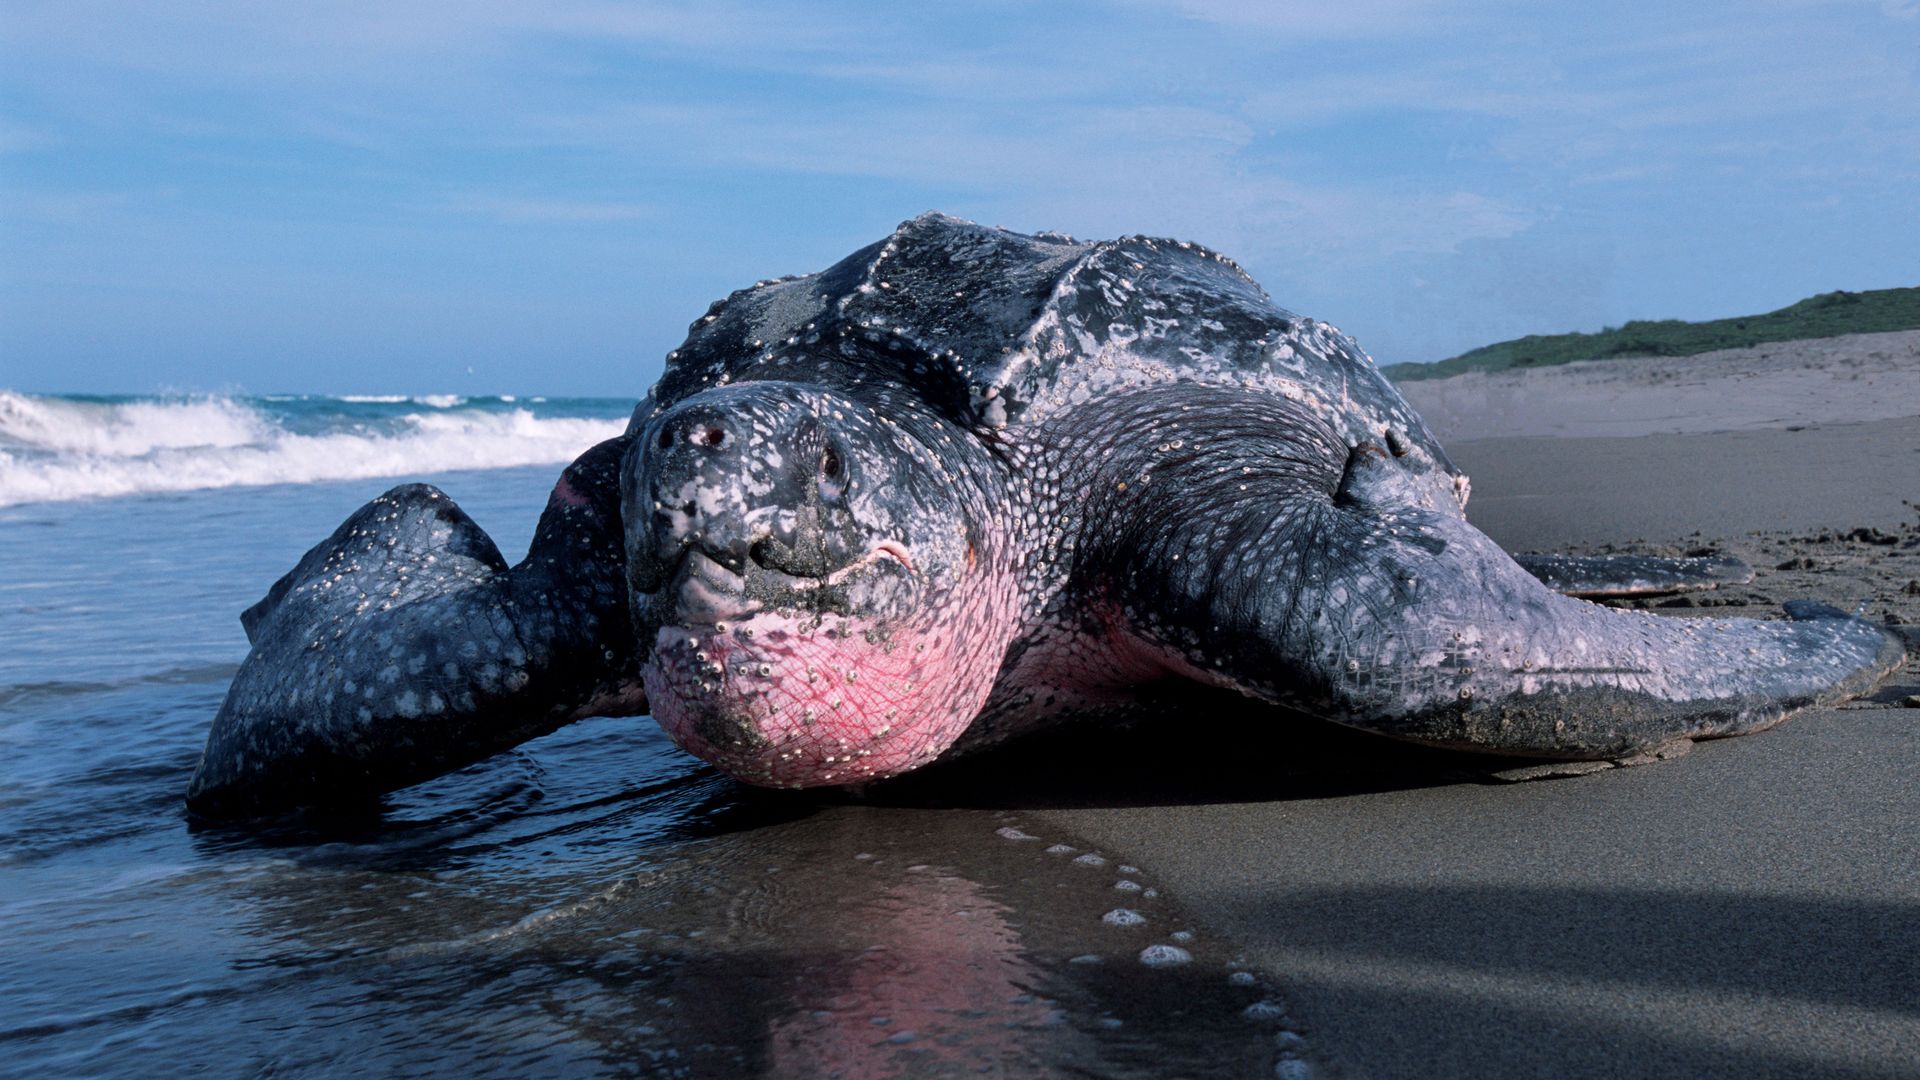 A leatherback sea turtle